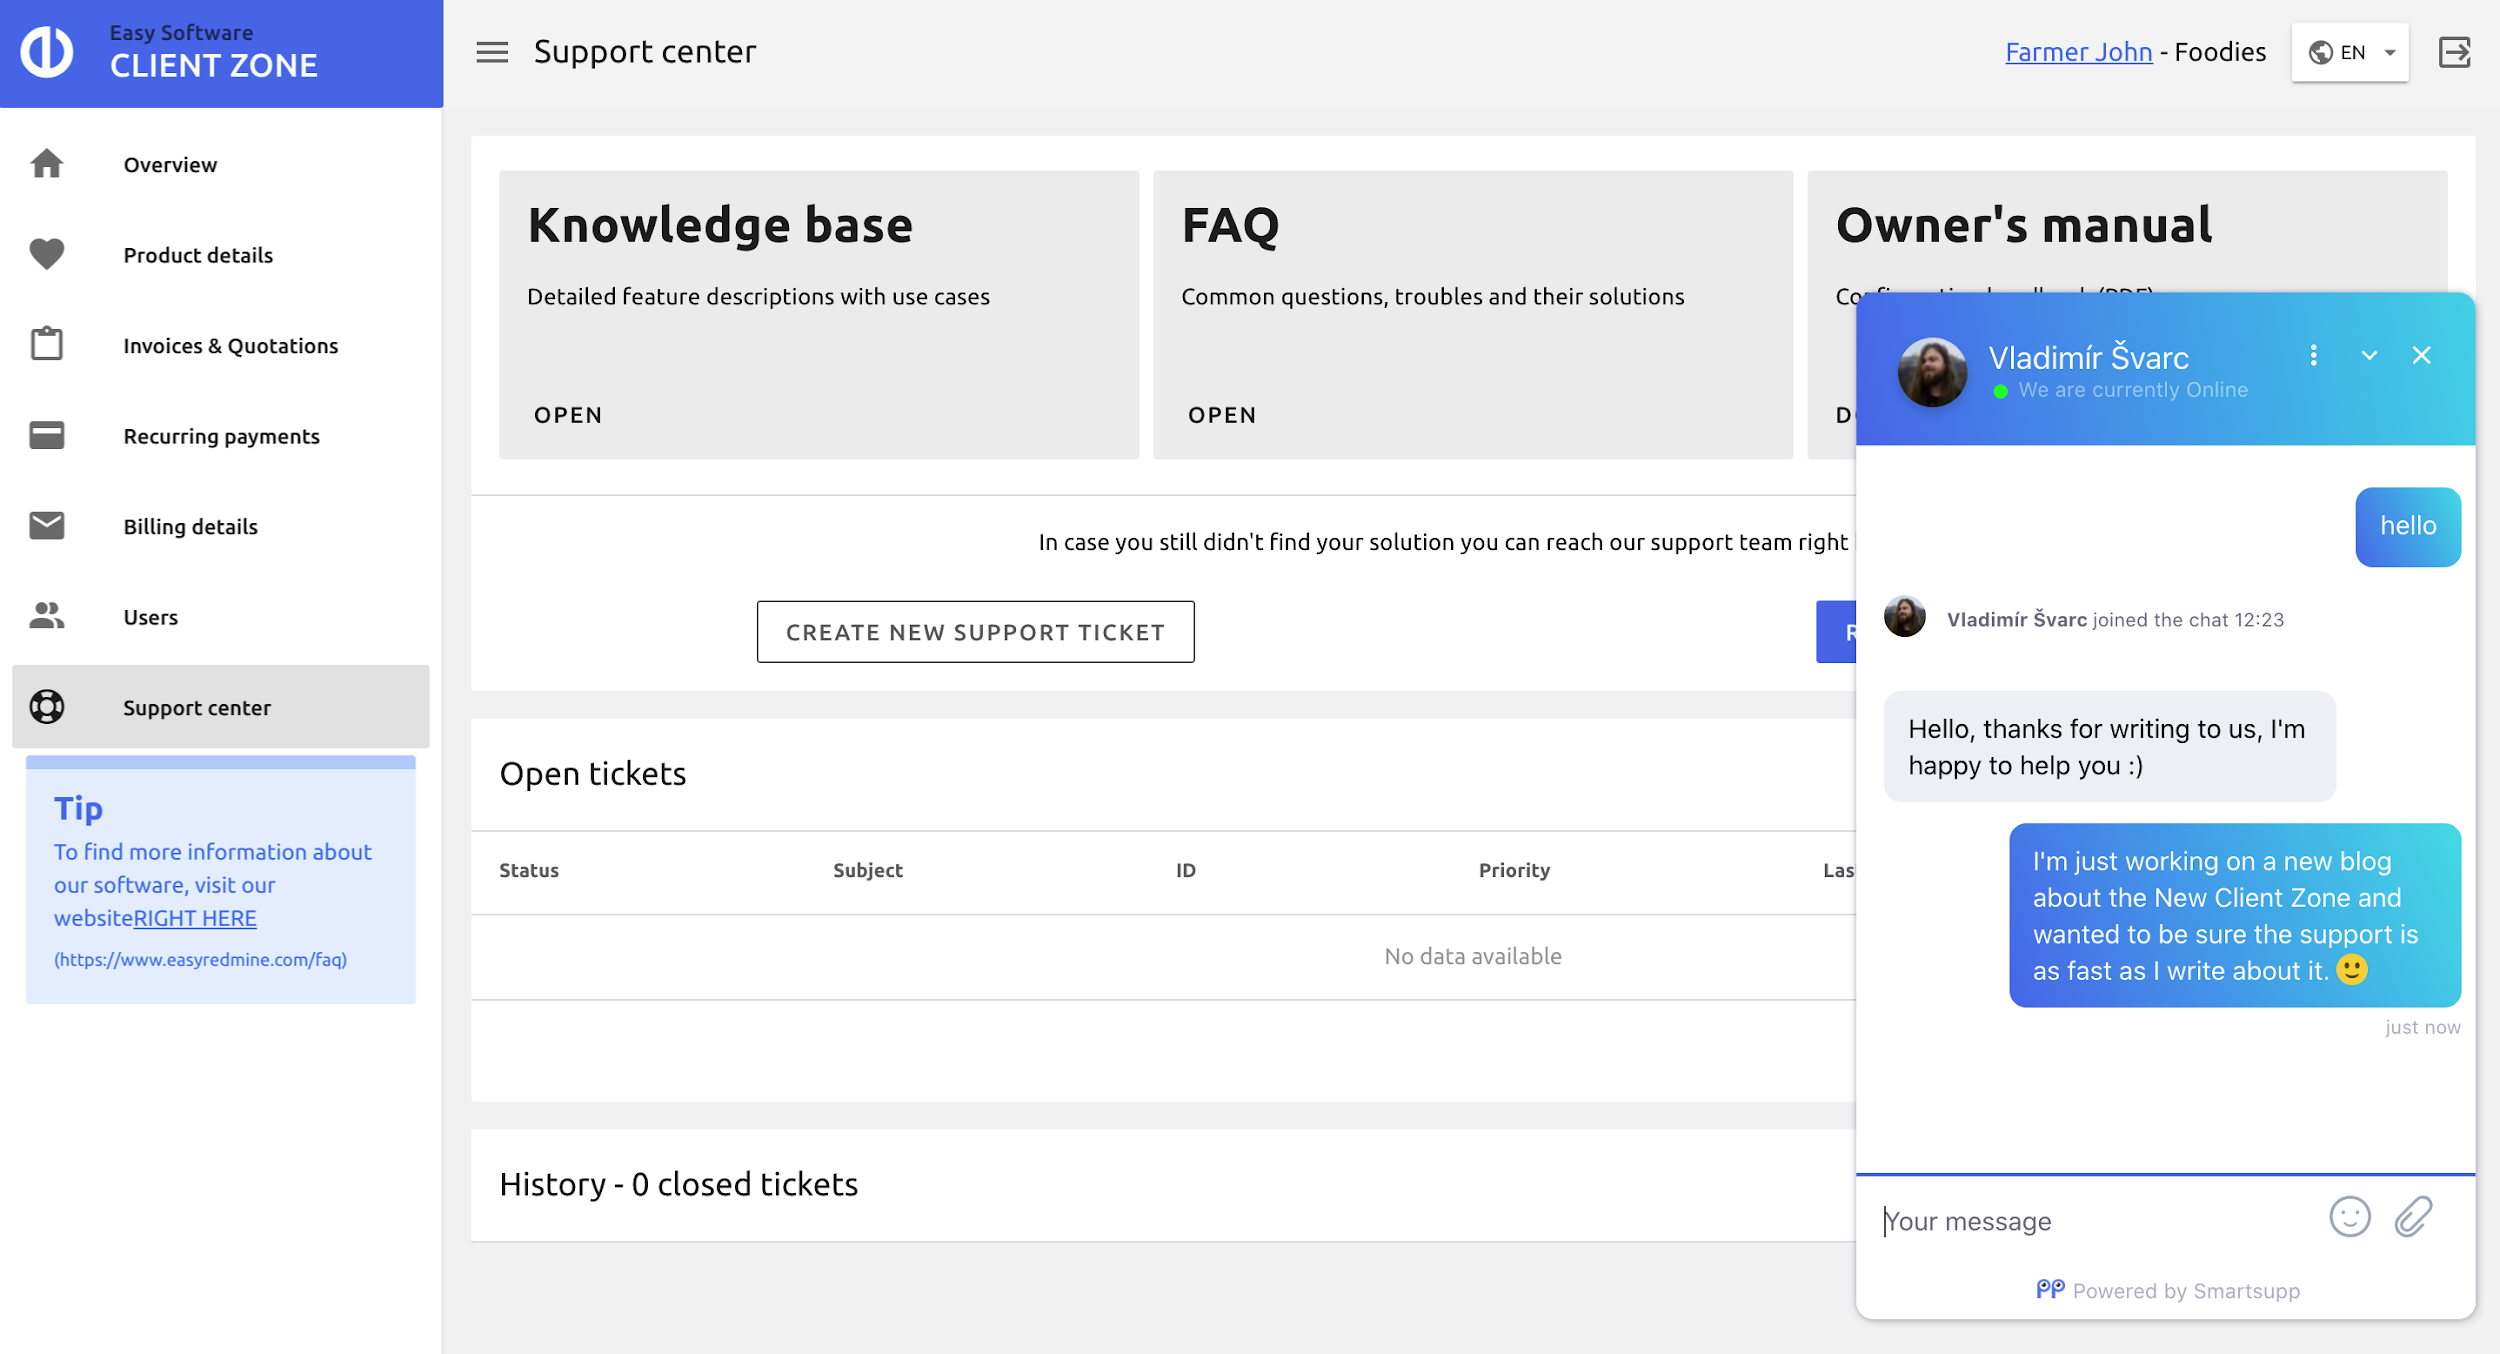 Welkom bij de nieuwe klantenzone 2.0: zie hoe u het beheer van uw Easy Project-account soepeler kunt maken